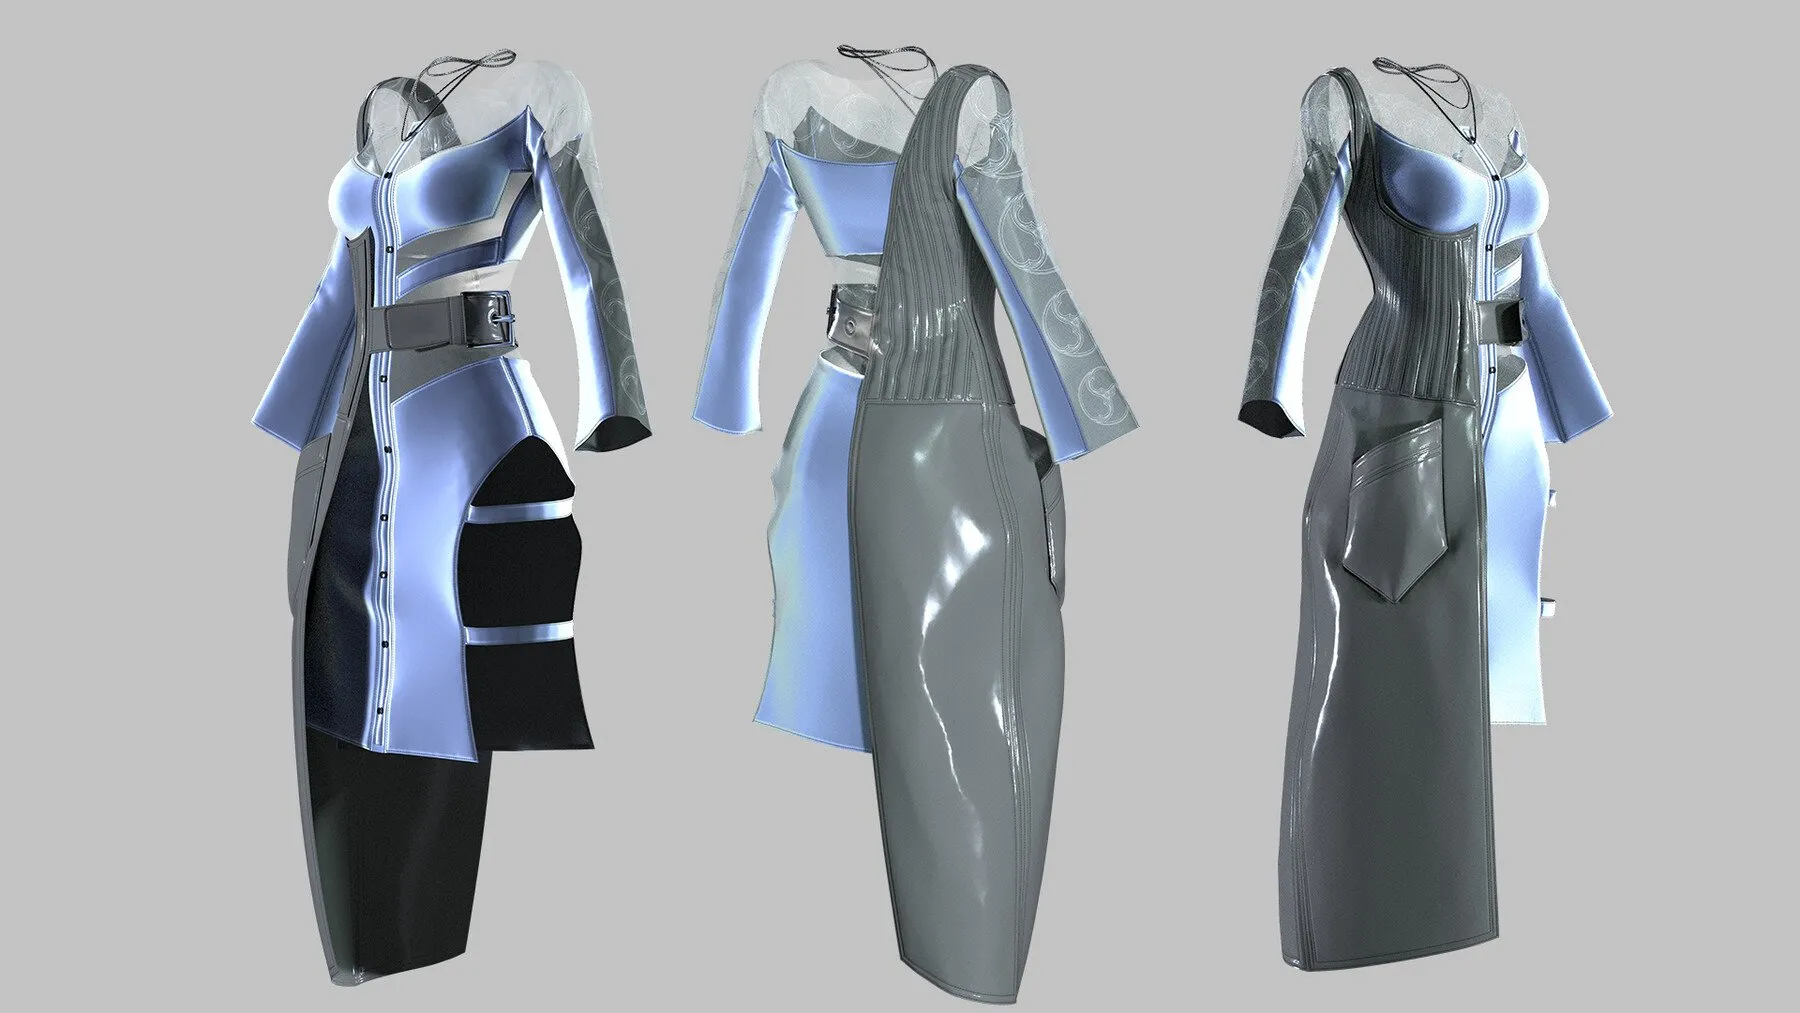 futuristic outfit ideas